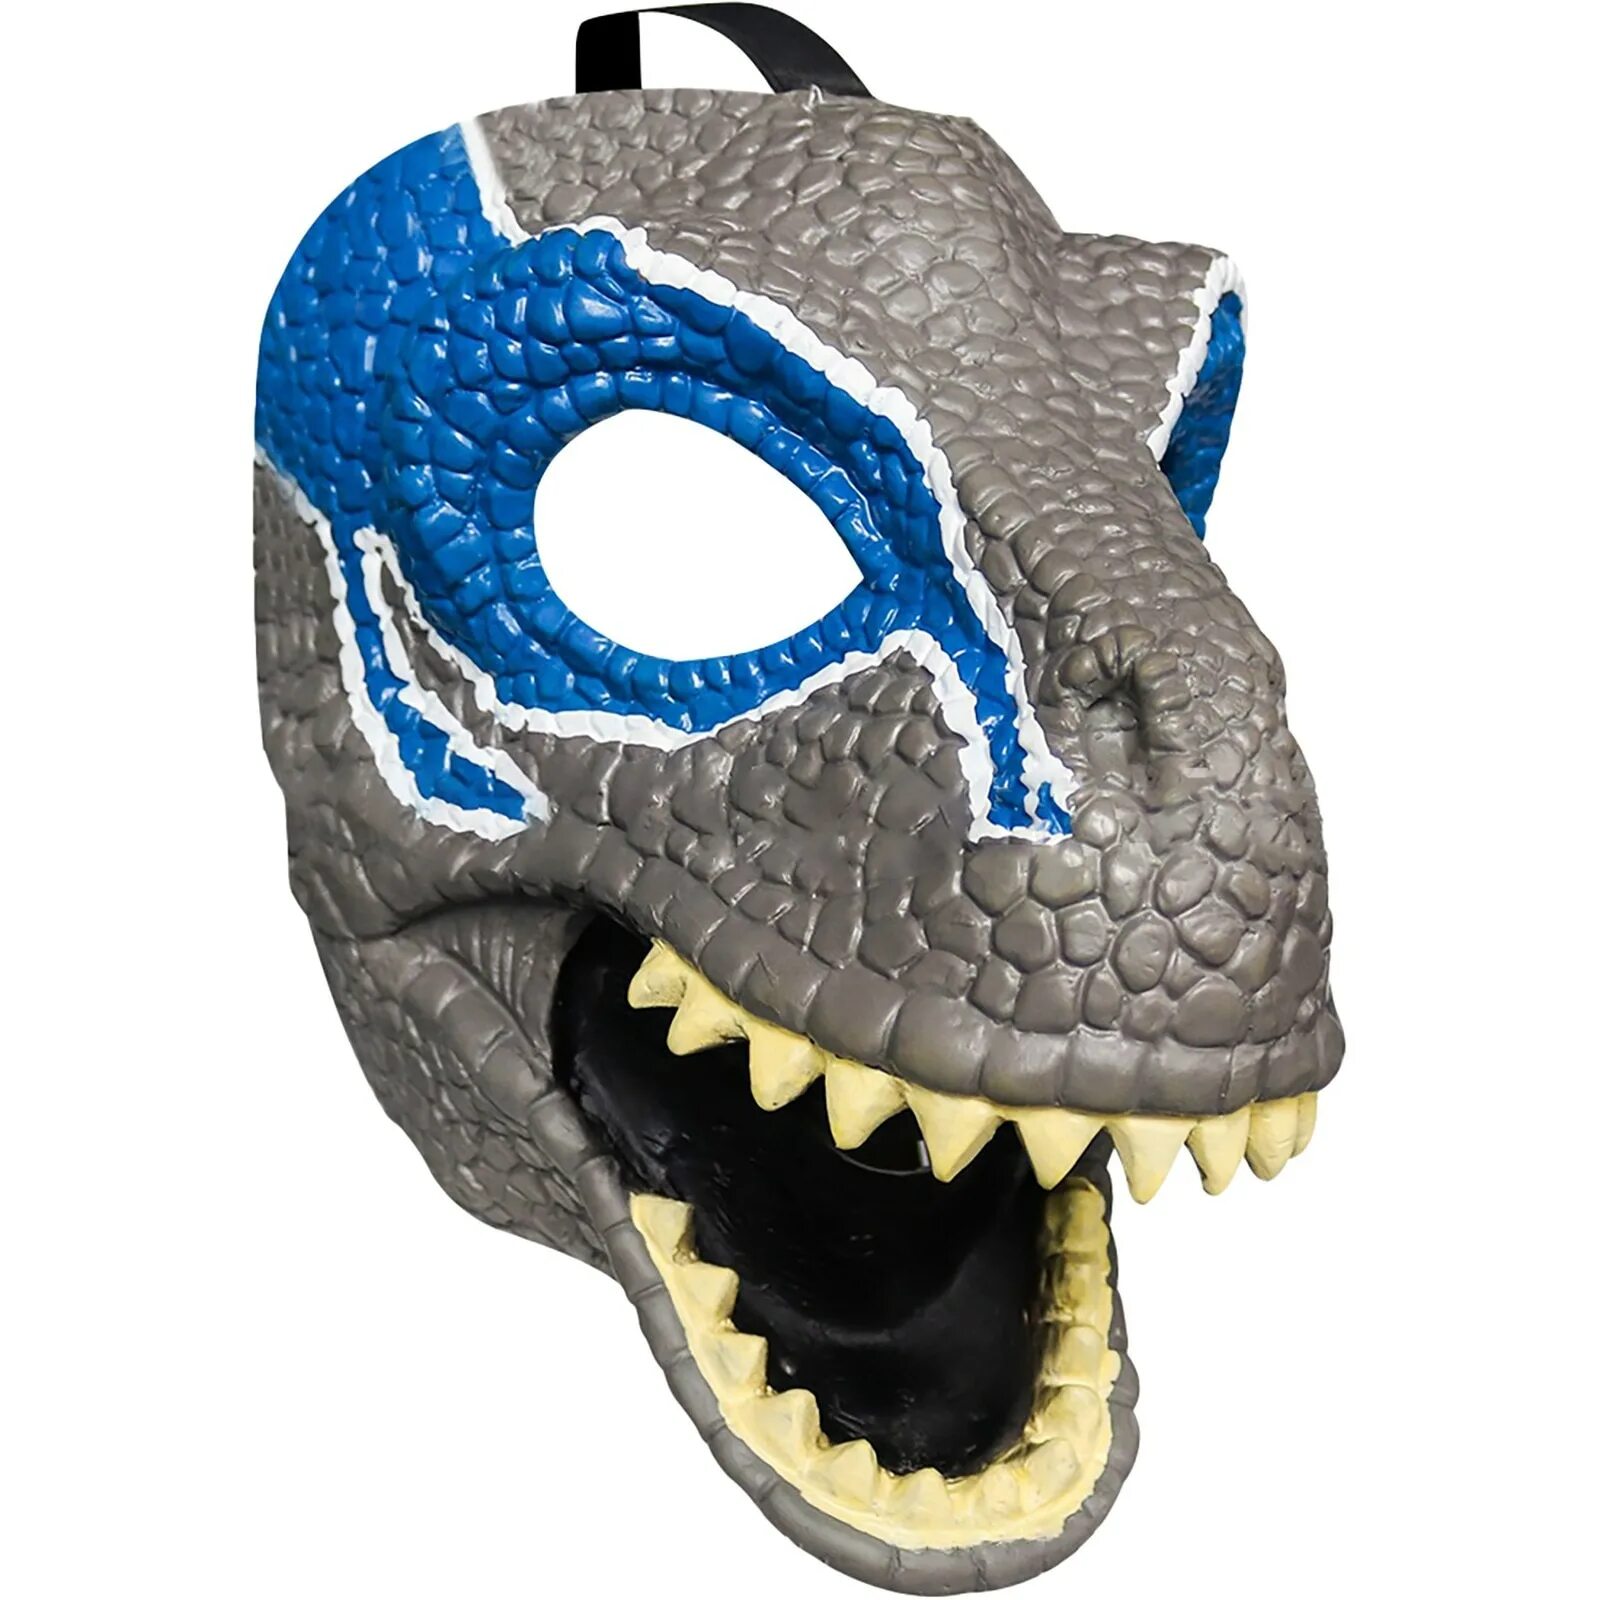 Маска с открывающимся ртом. Дино маска Раптор. Маска Дино рекс. Маска раптора Jurassic World фурсьют. Раптор динозавр маска.